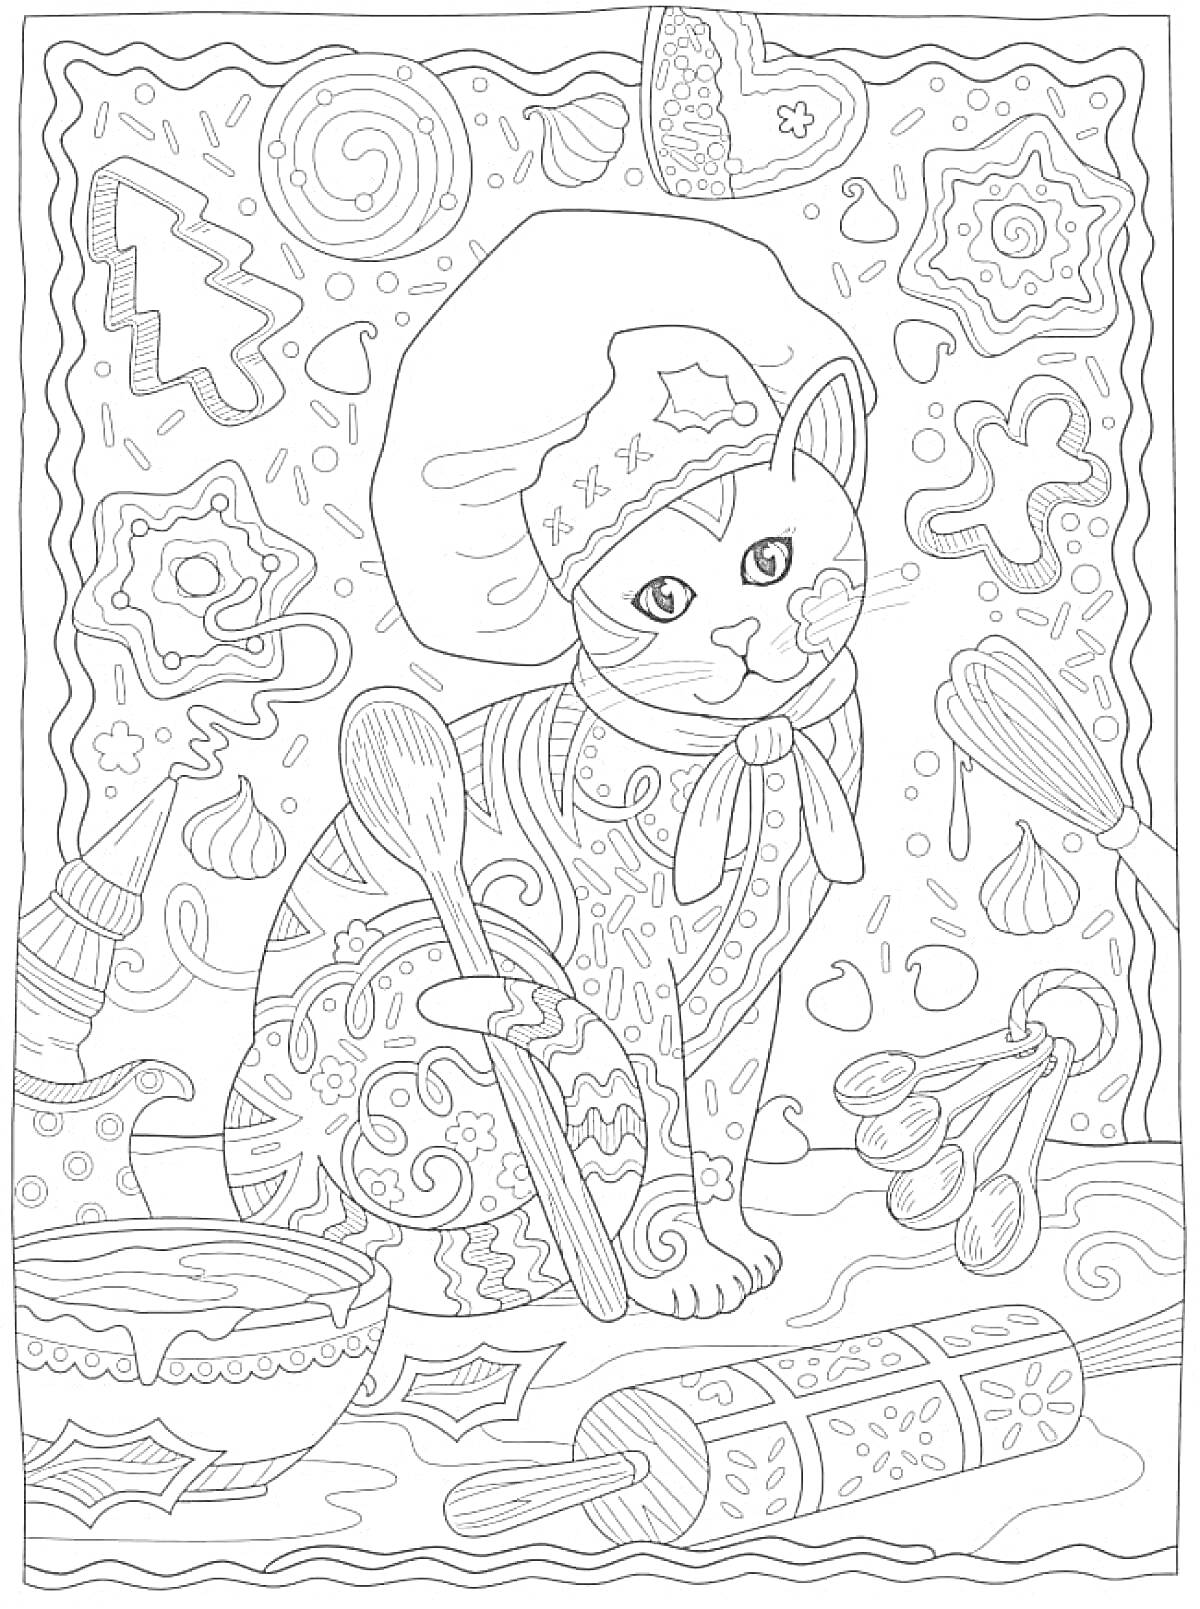 Кошка-пекарь с венчиком, ложками, миской, качалкой, имбирными пряниками и кремом